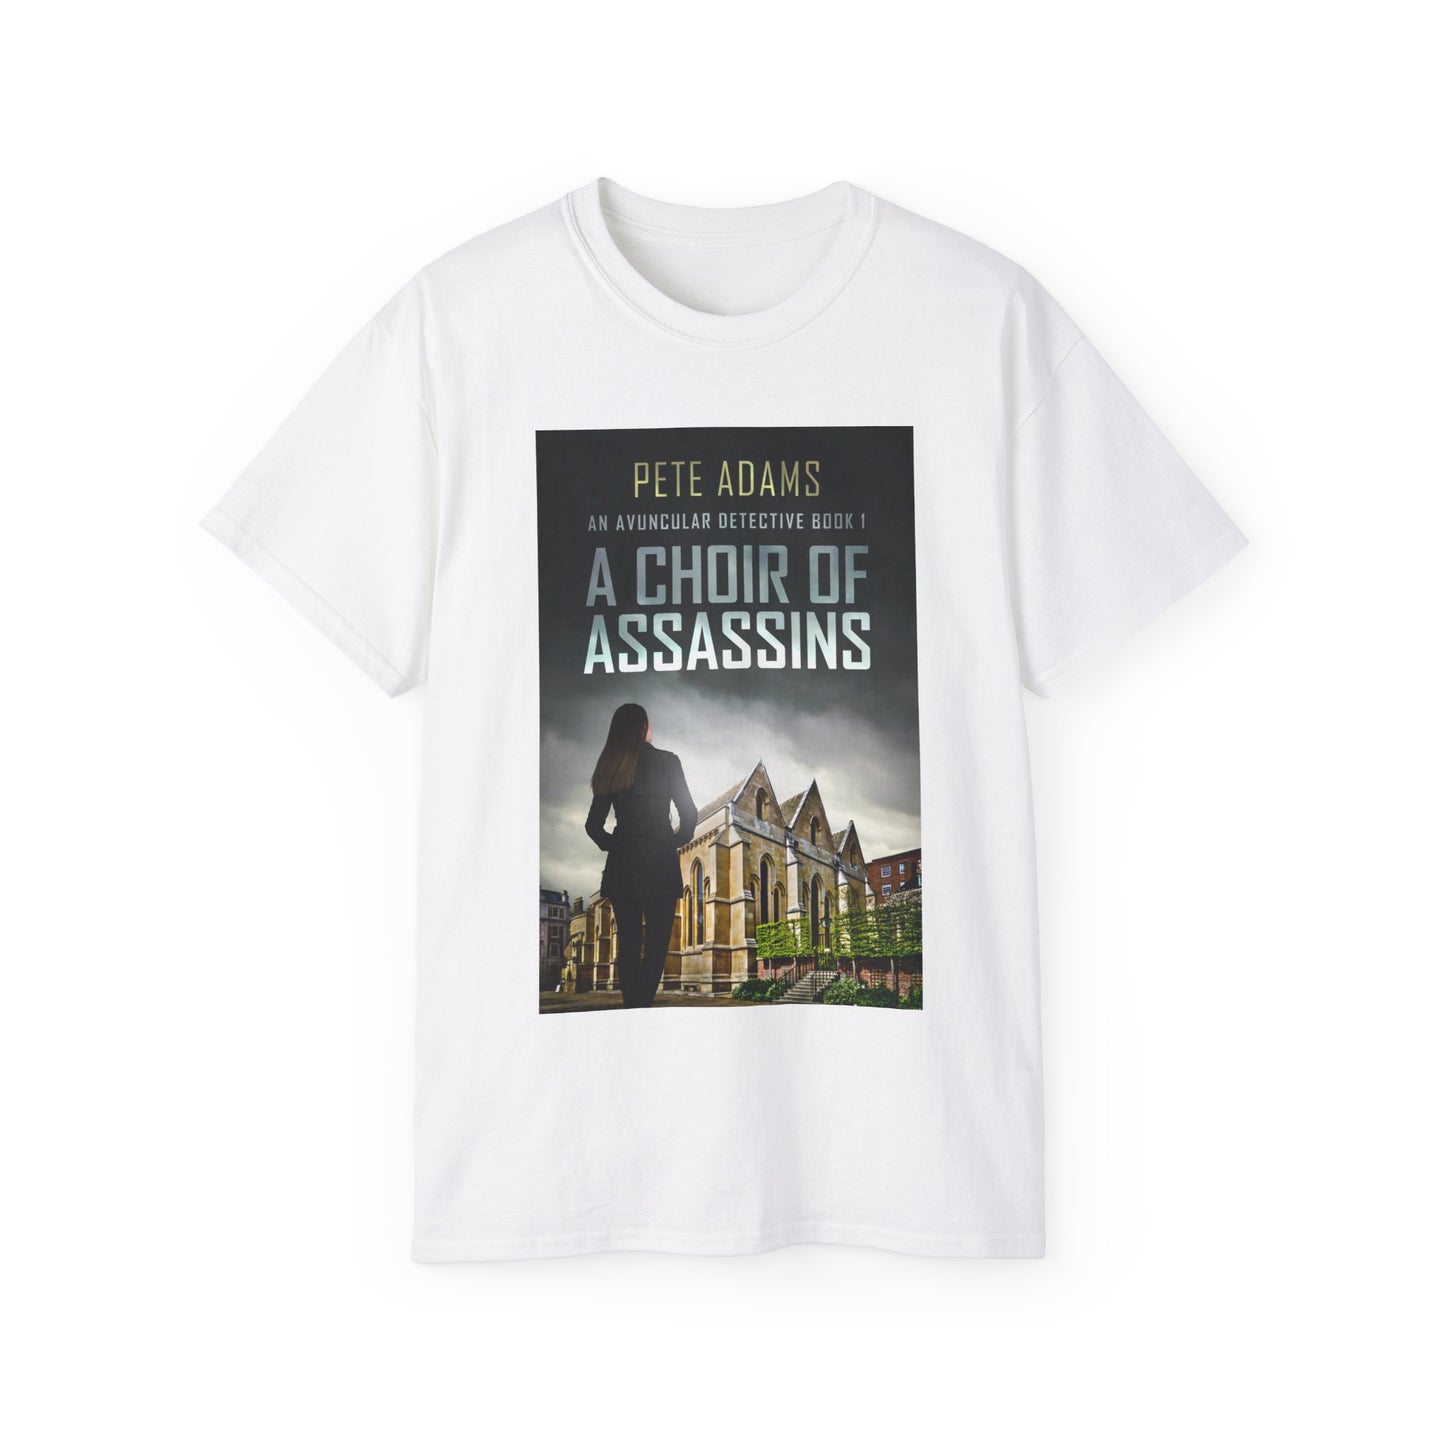 A Choir Of Assassins - Unisex T-Shirt